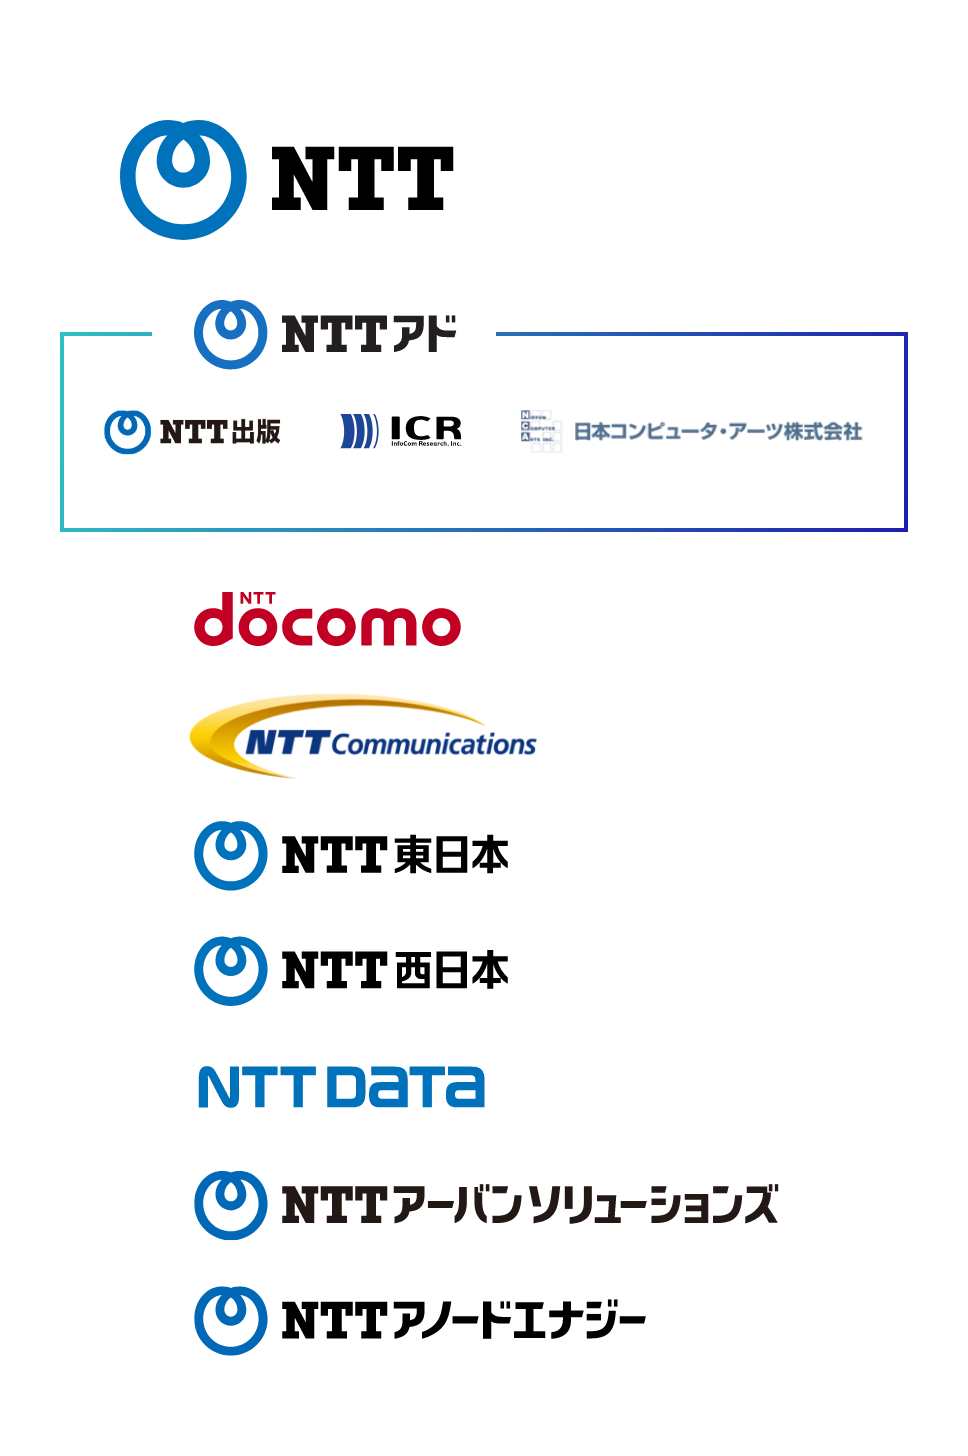 NTTアドを取り巻くグループ企業一覧図。NTTグループとして、上からNTT、NTTアドグループ4社、NTTドコモ、NTTコミュニケーションズ、NTT東日本、NTT西日本、NTTデータ、NTTアーバンソリューションズ、NTTアノードエナジーが並んでいる。